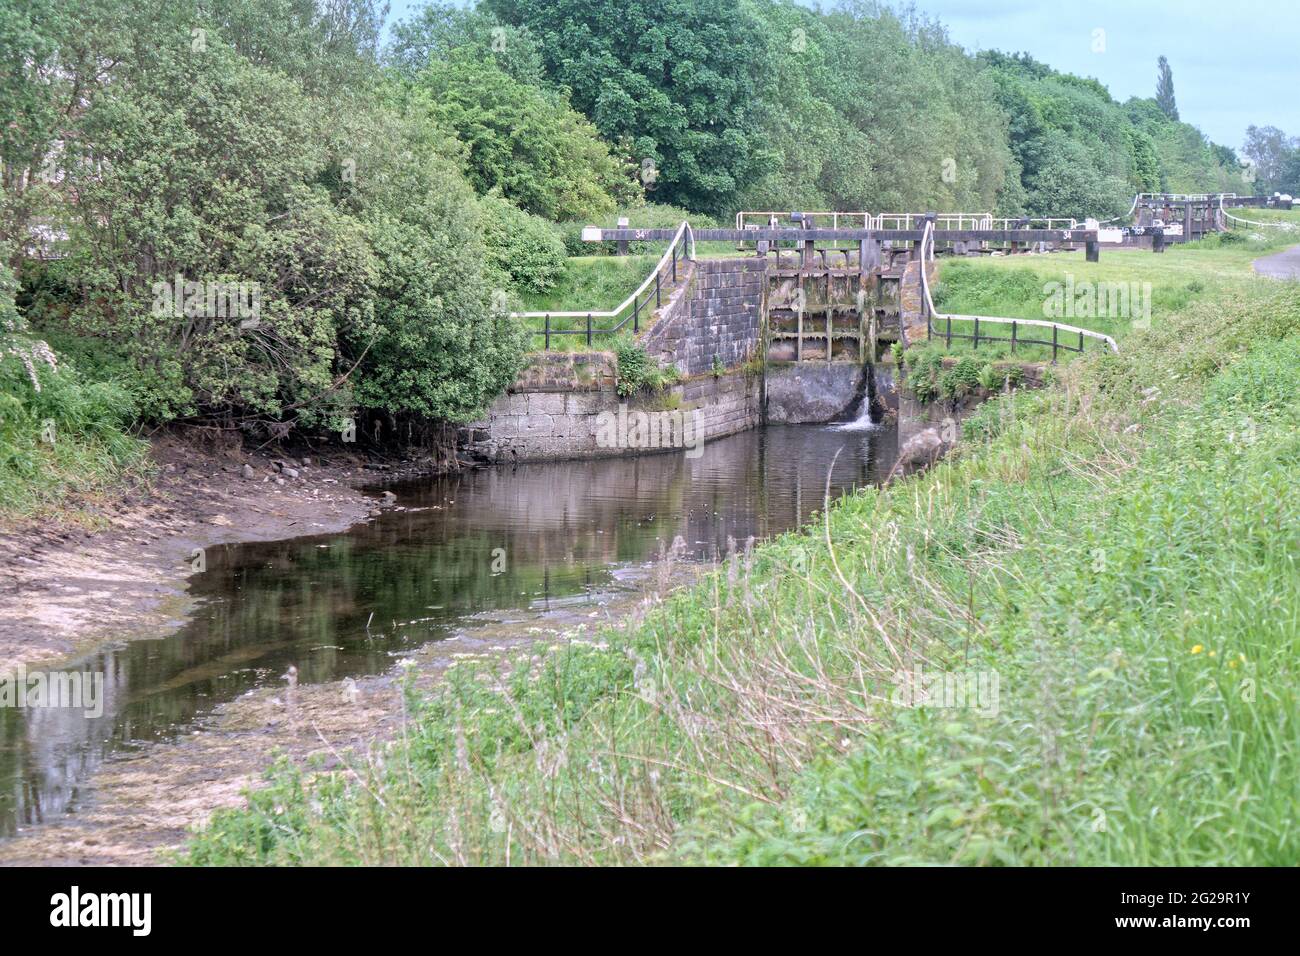 Glasgow, Escocia, Reino Unido, 9th de junio de 2021. Svottish Canals tuiteó “Debido a un problema de terceros con el oleoducto Monkland que alimenta el suministro de agua #ForthandClydeCanal, el suministro de agua en el canal es actualmente bajo. Toda la navegación a lo largo de la vía navegable está actualmente suspendida”. AZ La vida silvestre confusa y las cuencas del canal craqueo proporcionan una vista inusual para los espectadores en el towpath.Copyright Gerard Ferry/Alamy Live News Foto de stock